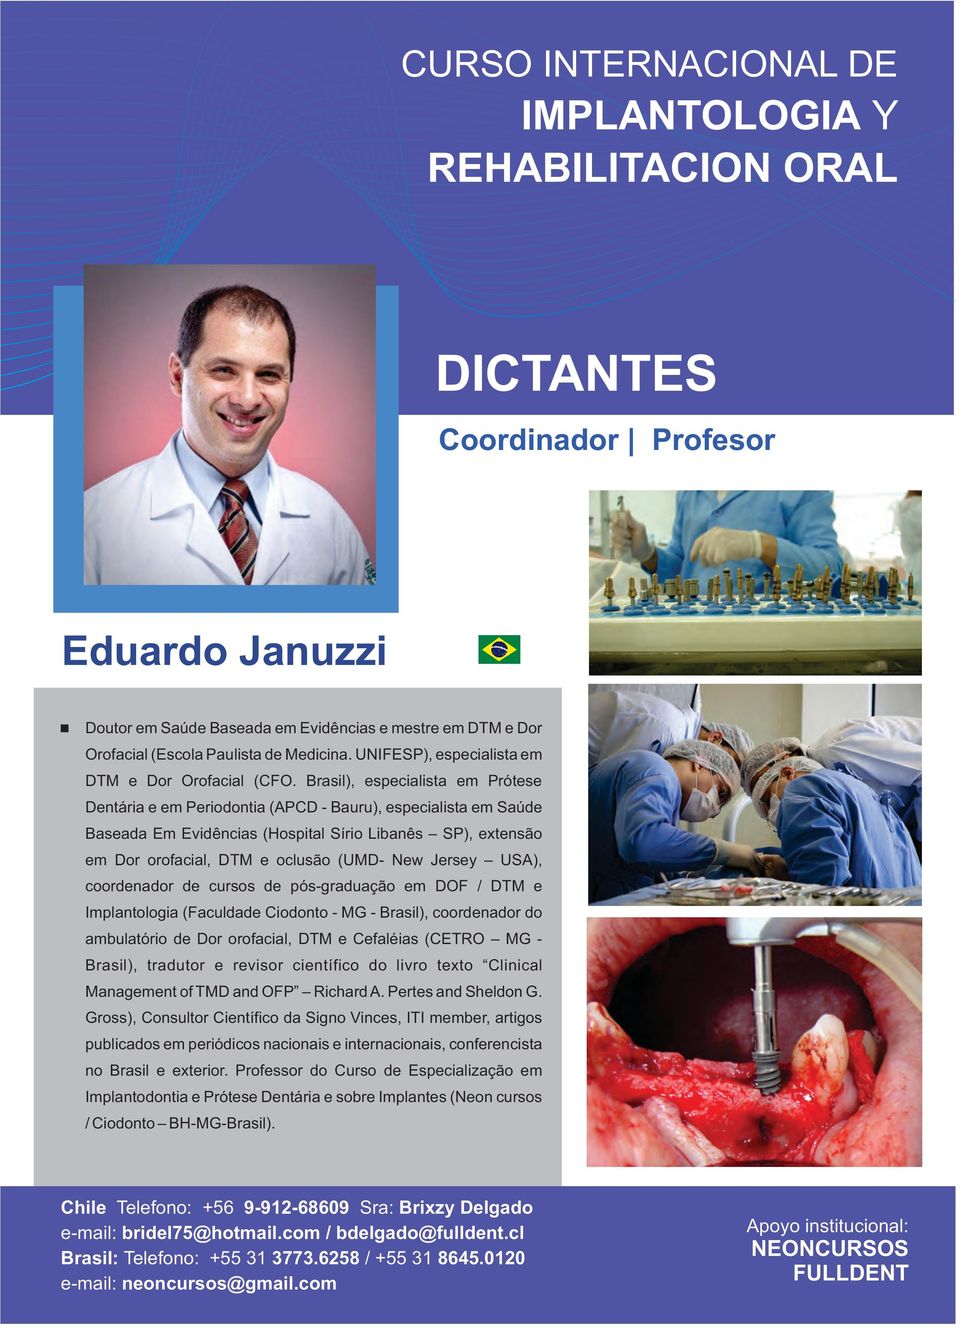 Jersey USA), coordenador de cursos de pós-graduação em DOF / DTM e Implantologia (Faculdade Ciodonto - MG - Brasil), coordenador do ambulatório de Dor orofacial, DTM e Cefaléias (CETRO MG - Brasil),